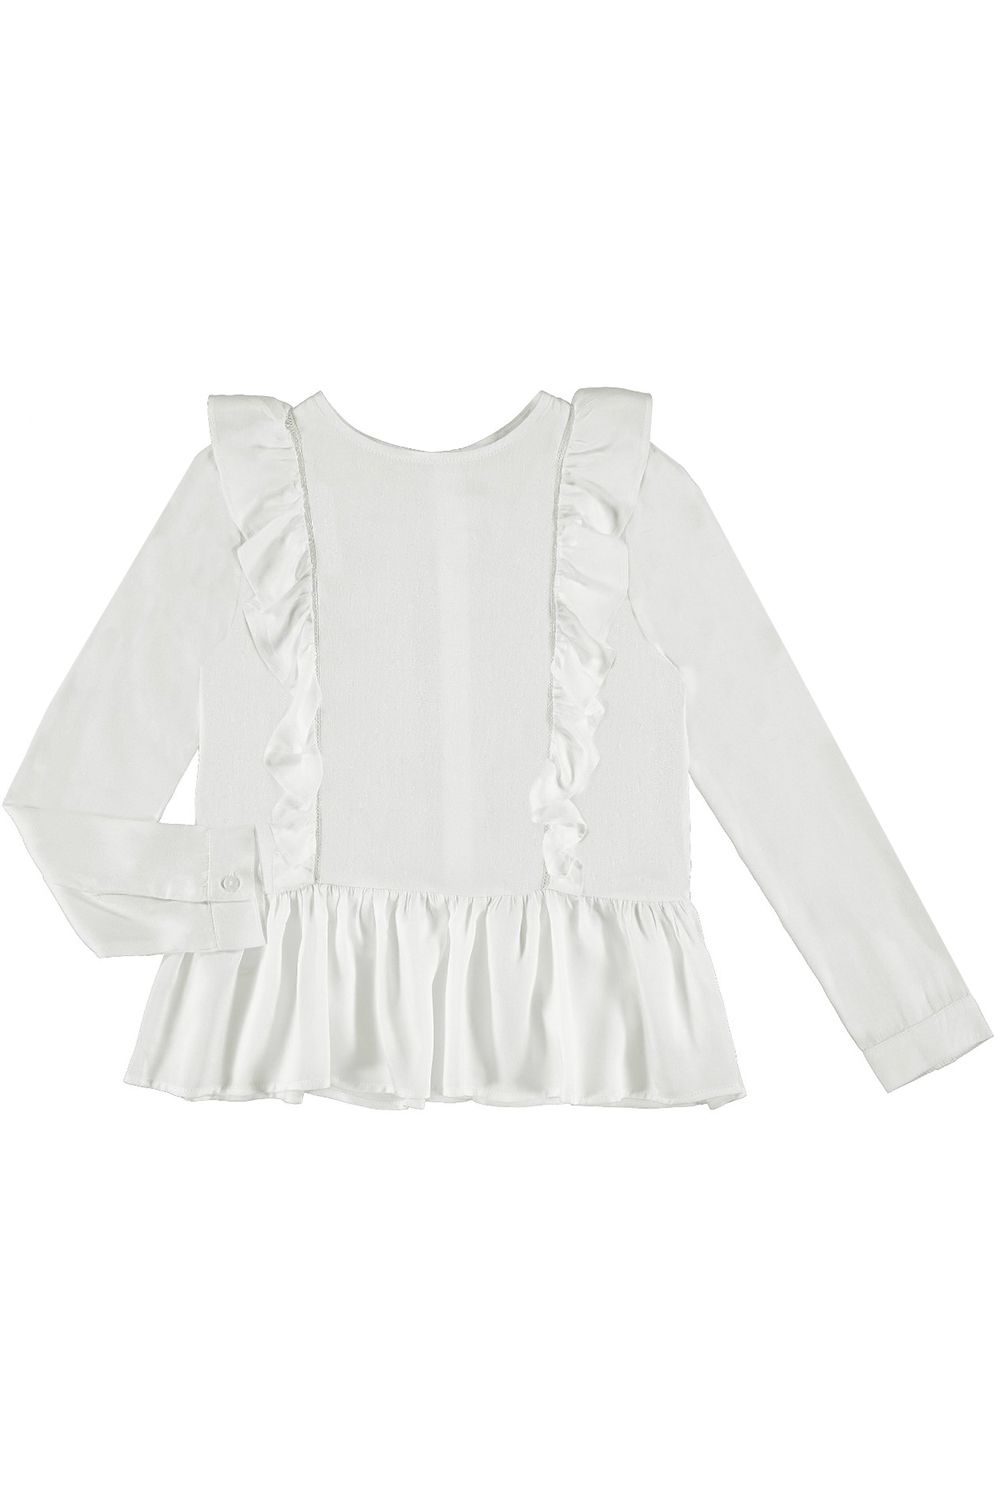 Блуза Mayoral, размер 162, цвет белый 7.122/48 - фото 1